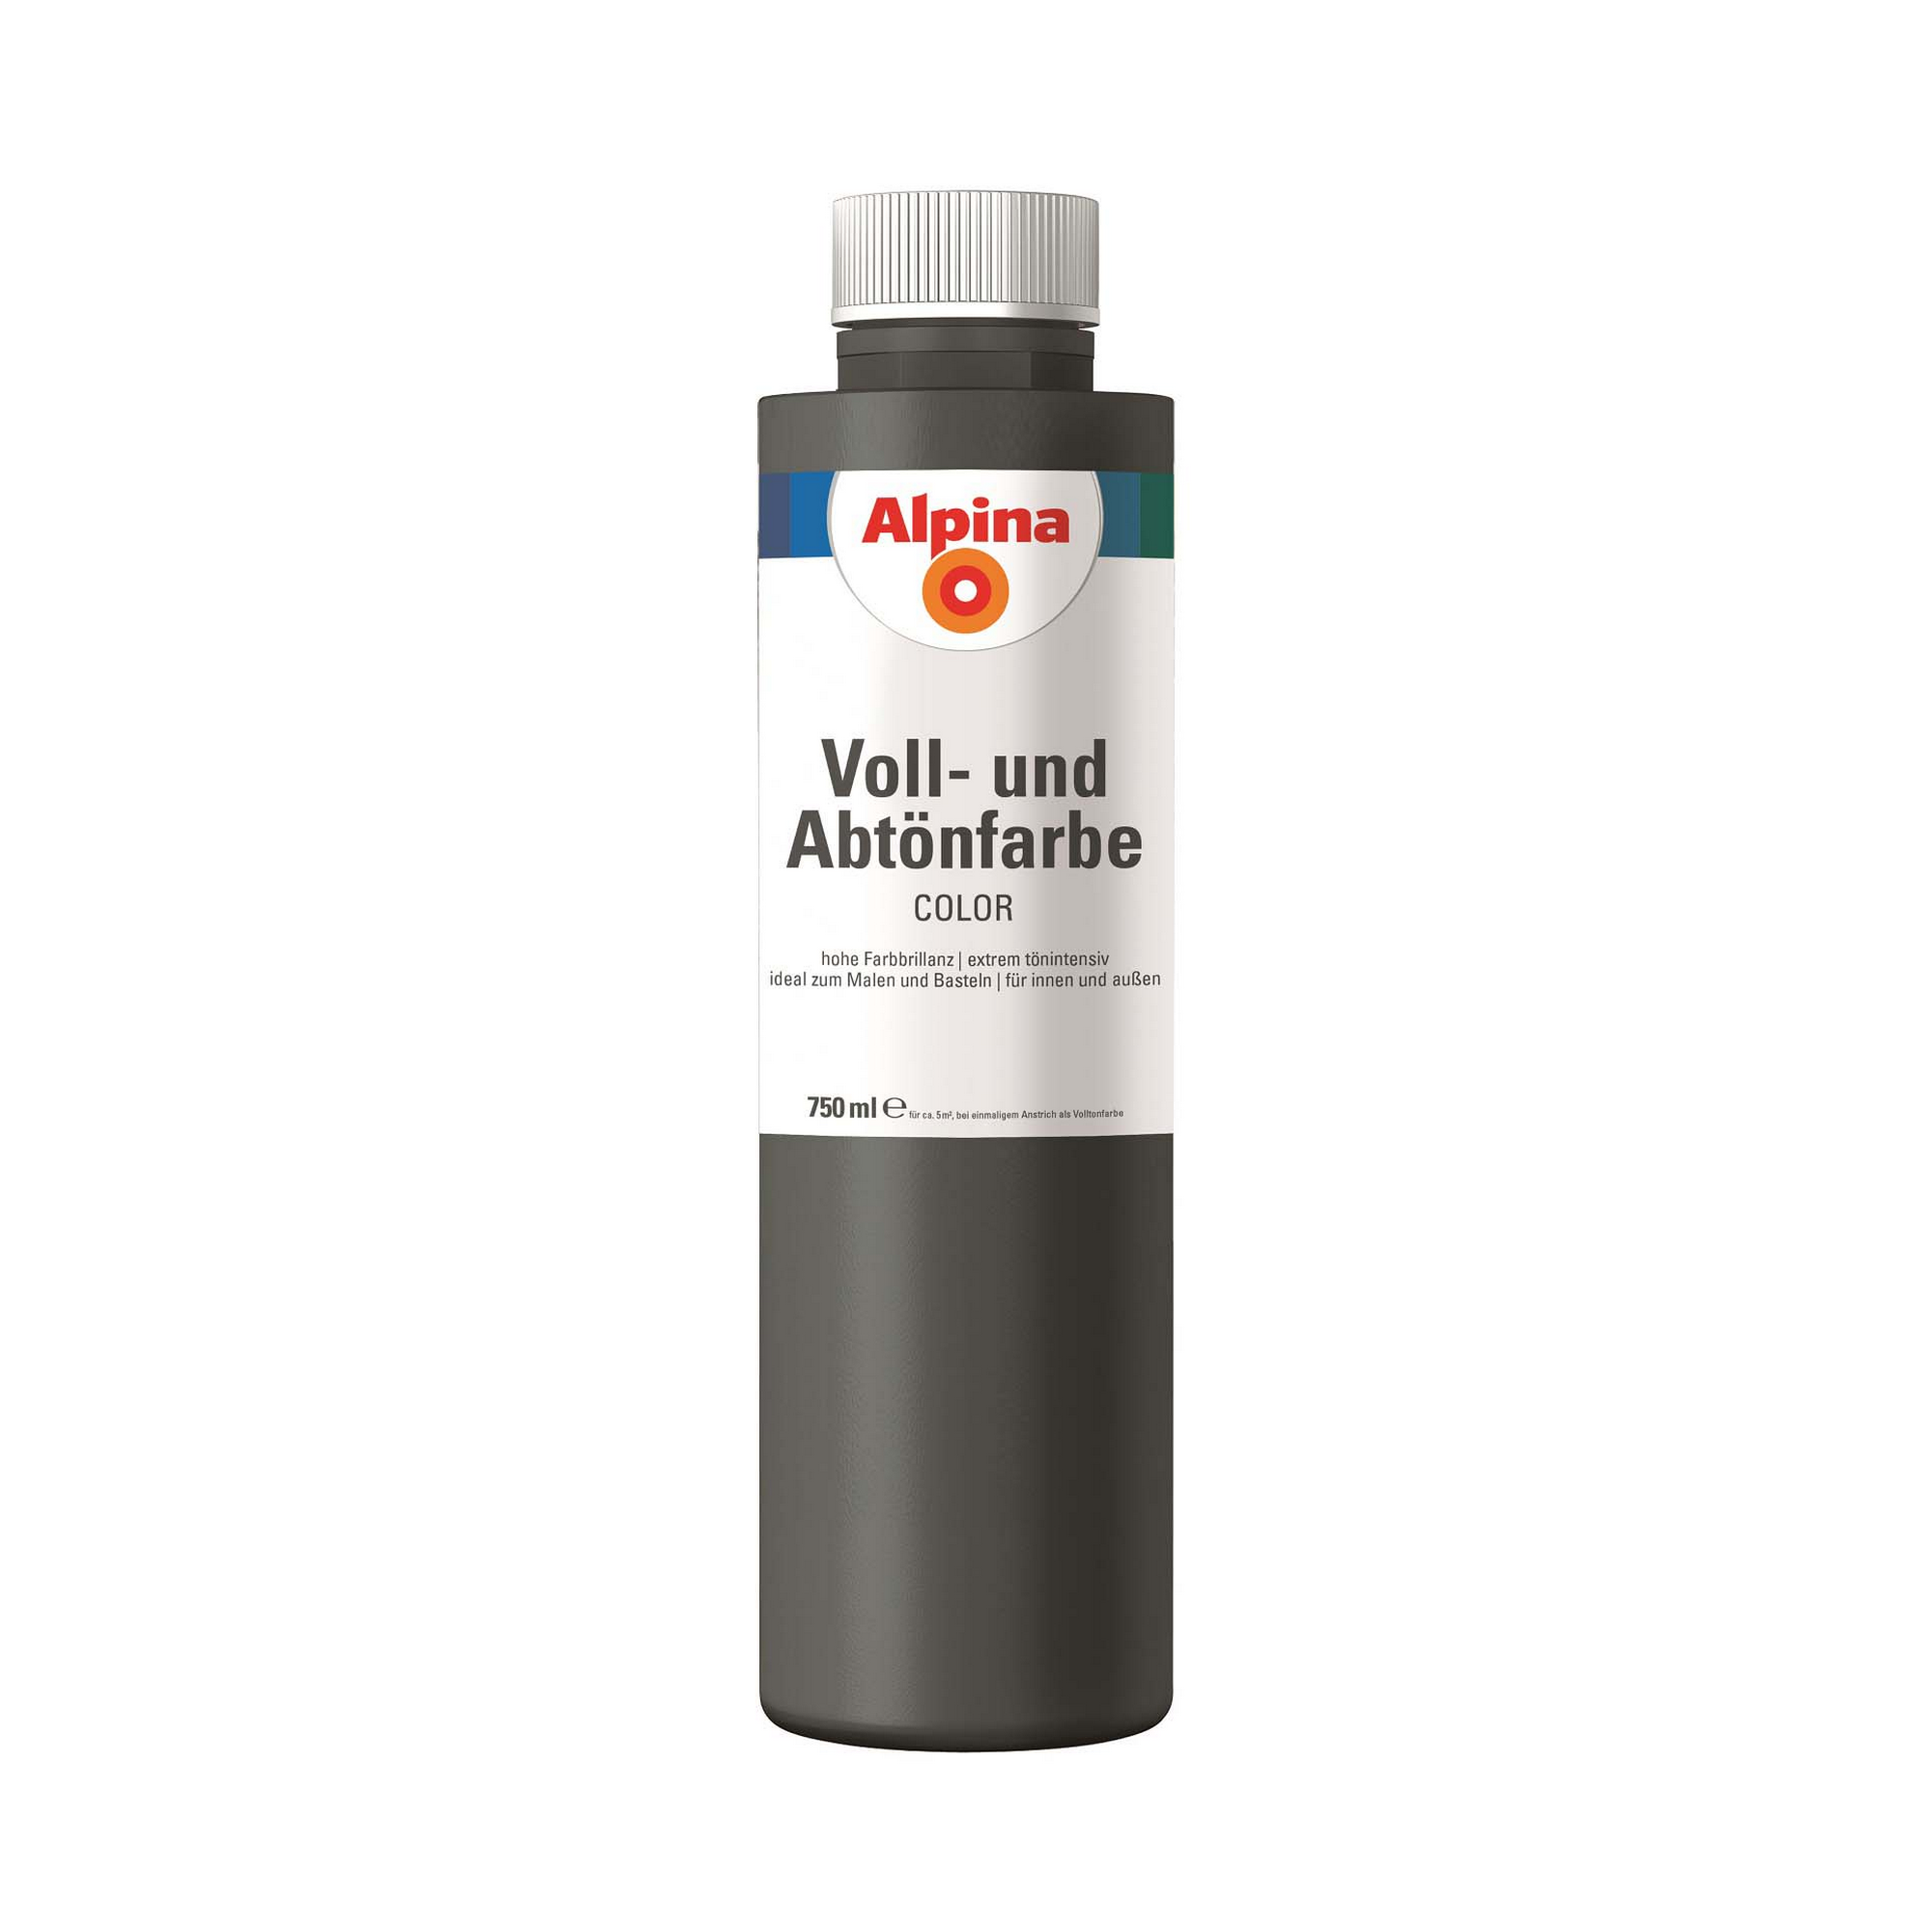 Voll- und Abtönfarbe 'Dark Grey' dunkelgrau 750 ml + product picture